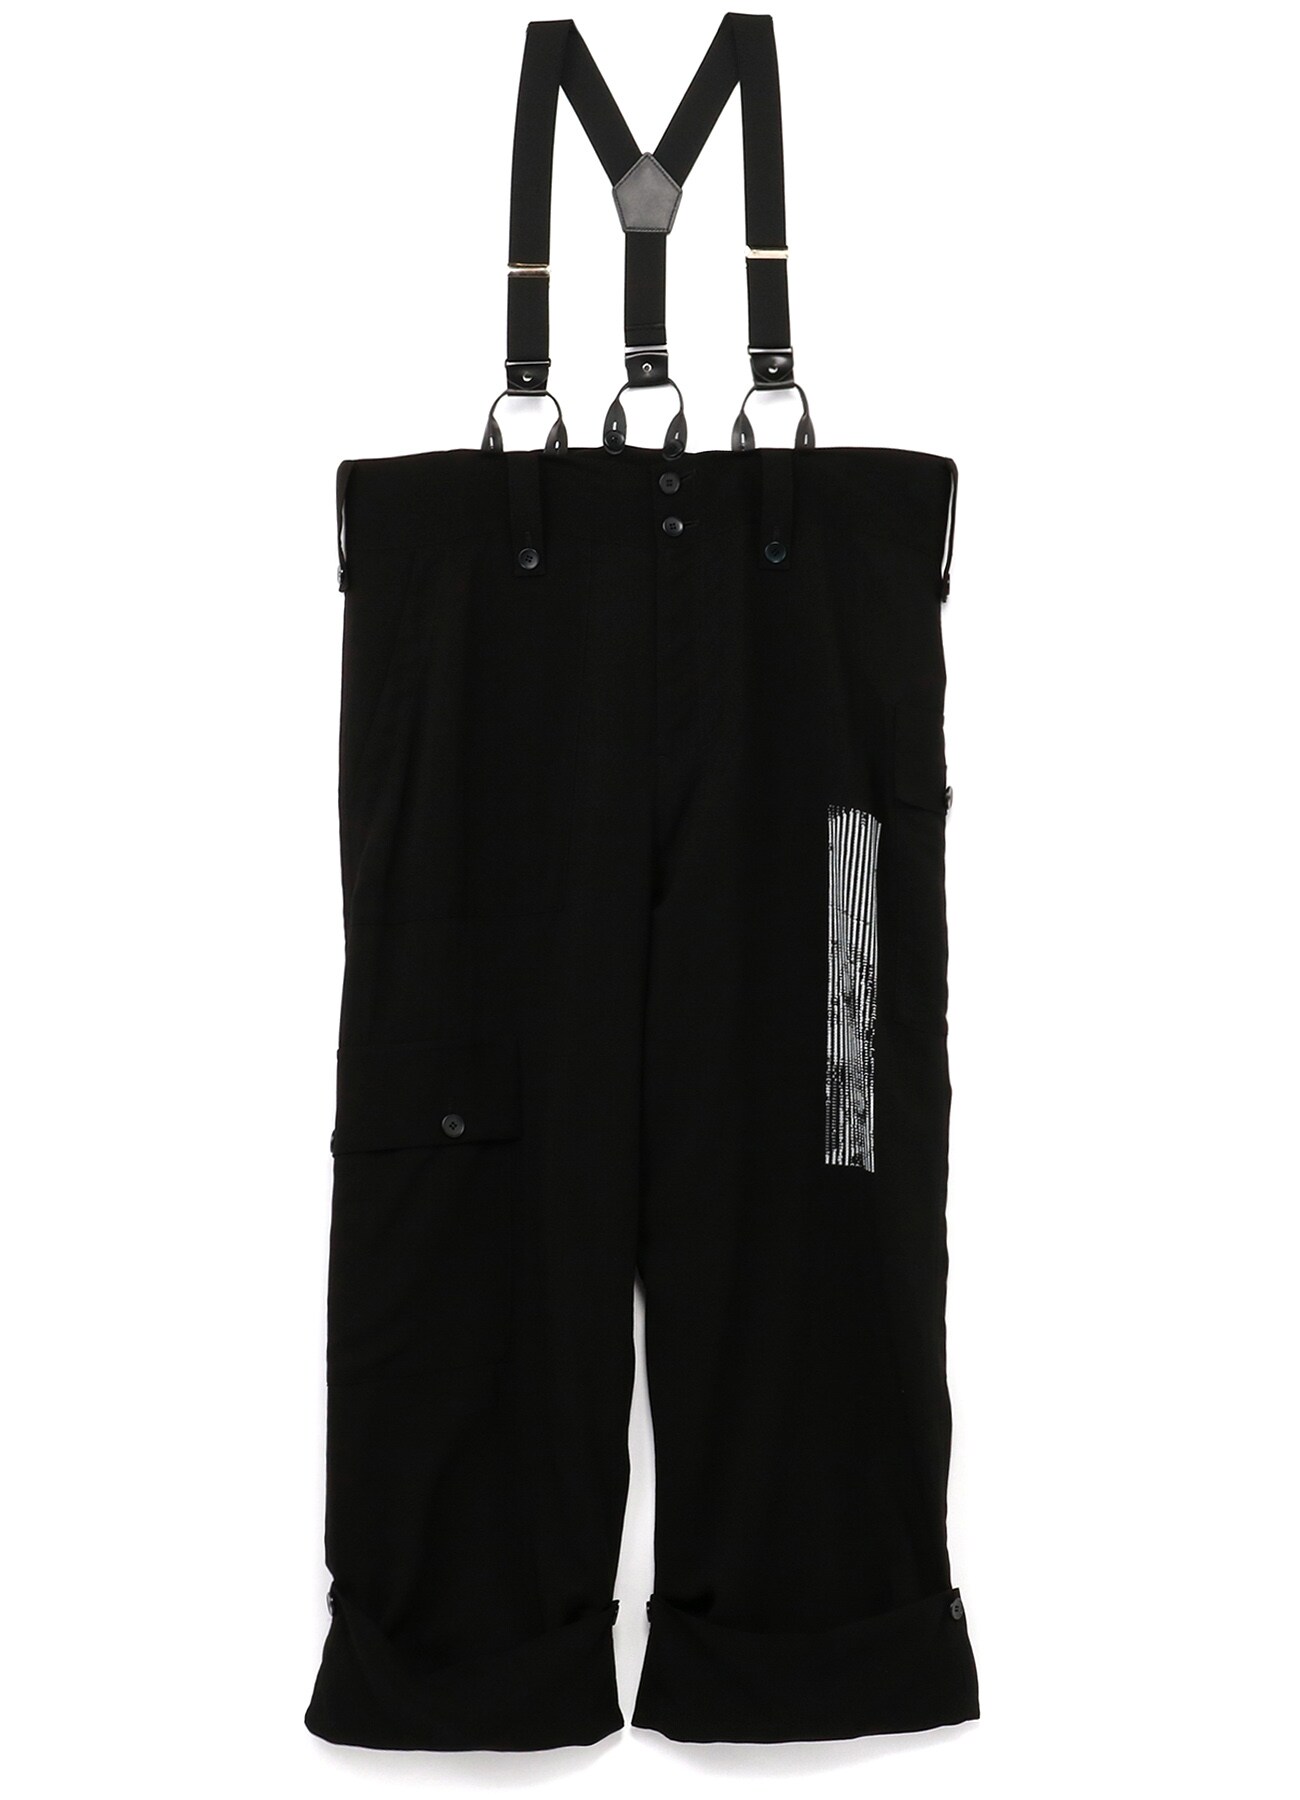 Ry/Cu Ascii Eye Print Suspenders Pants